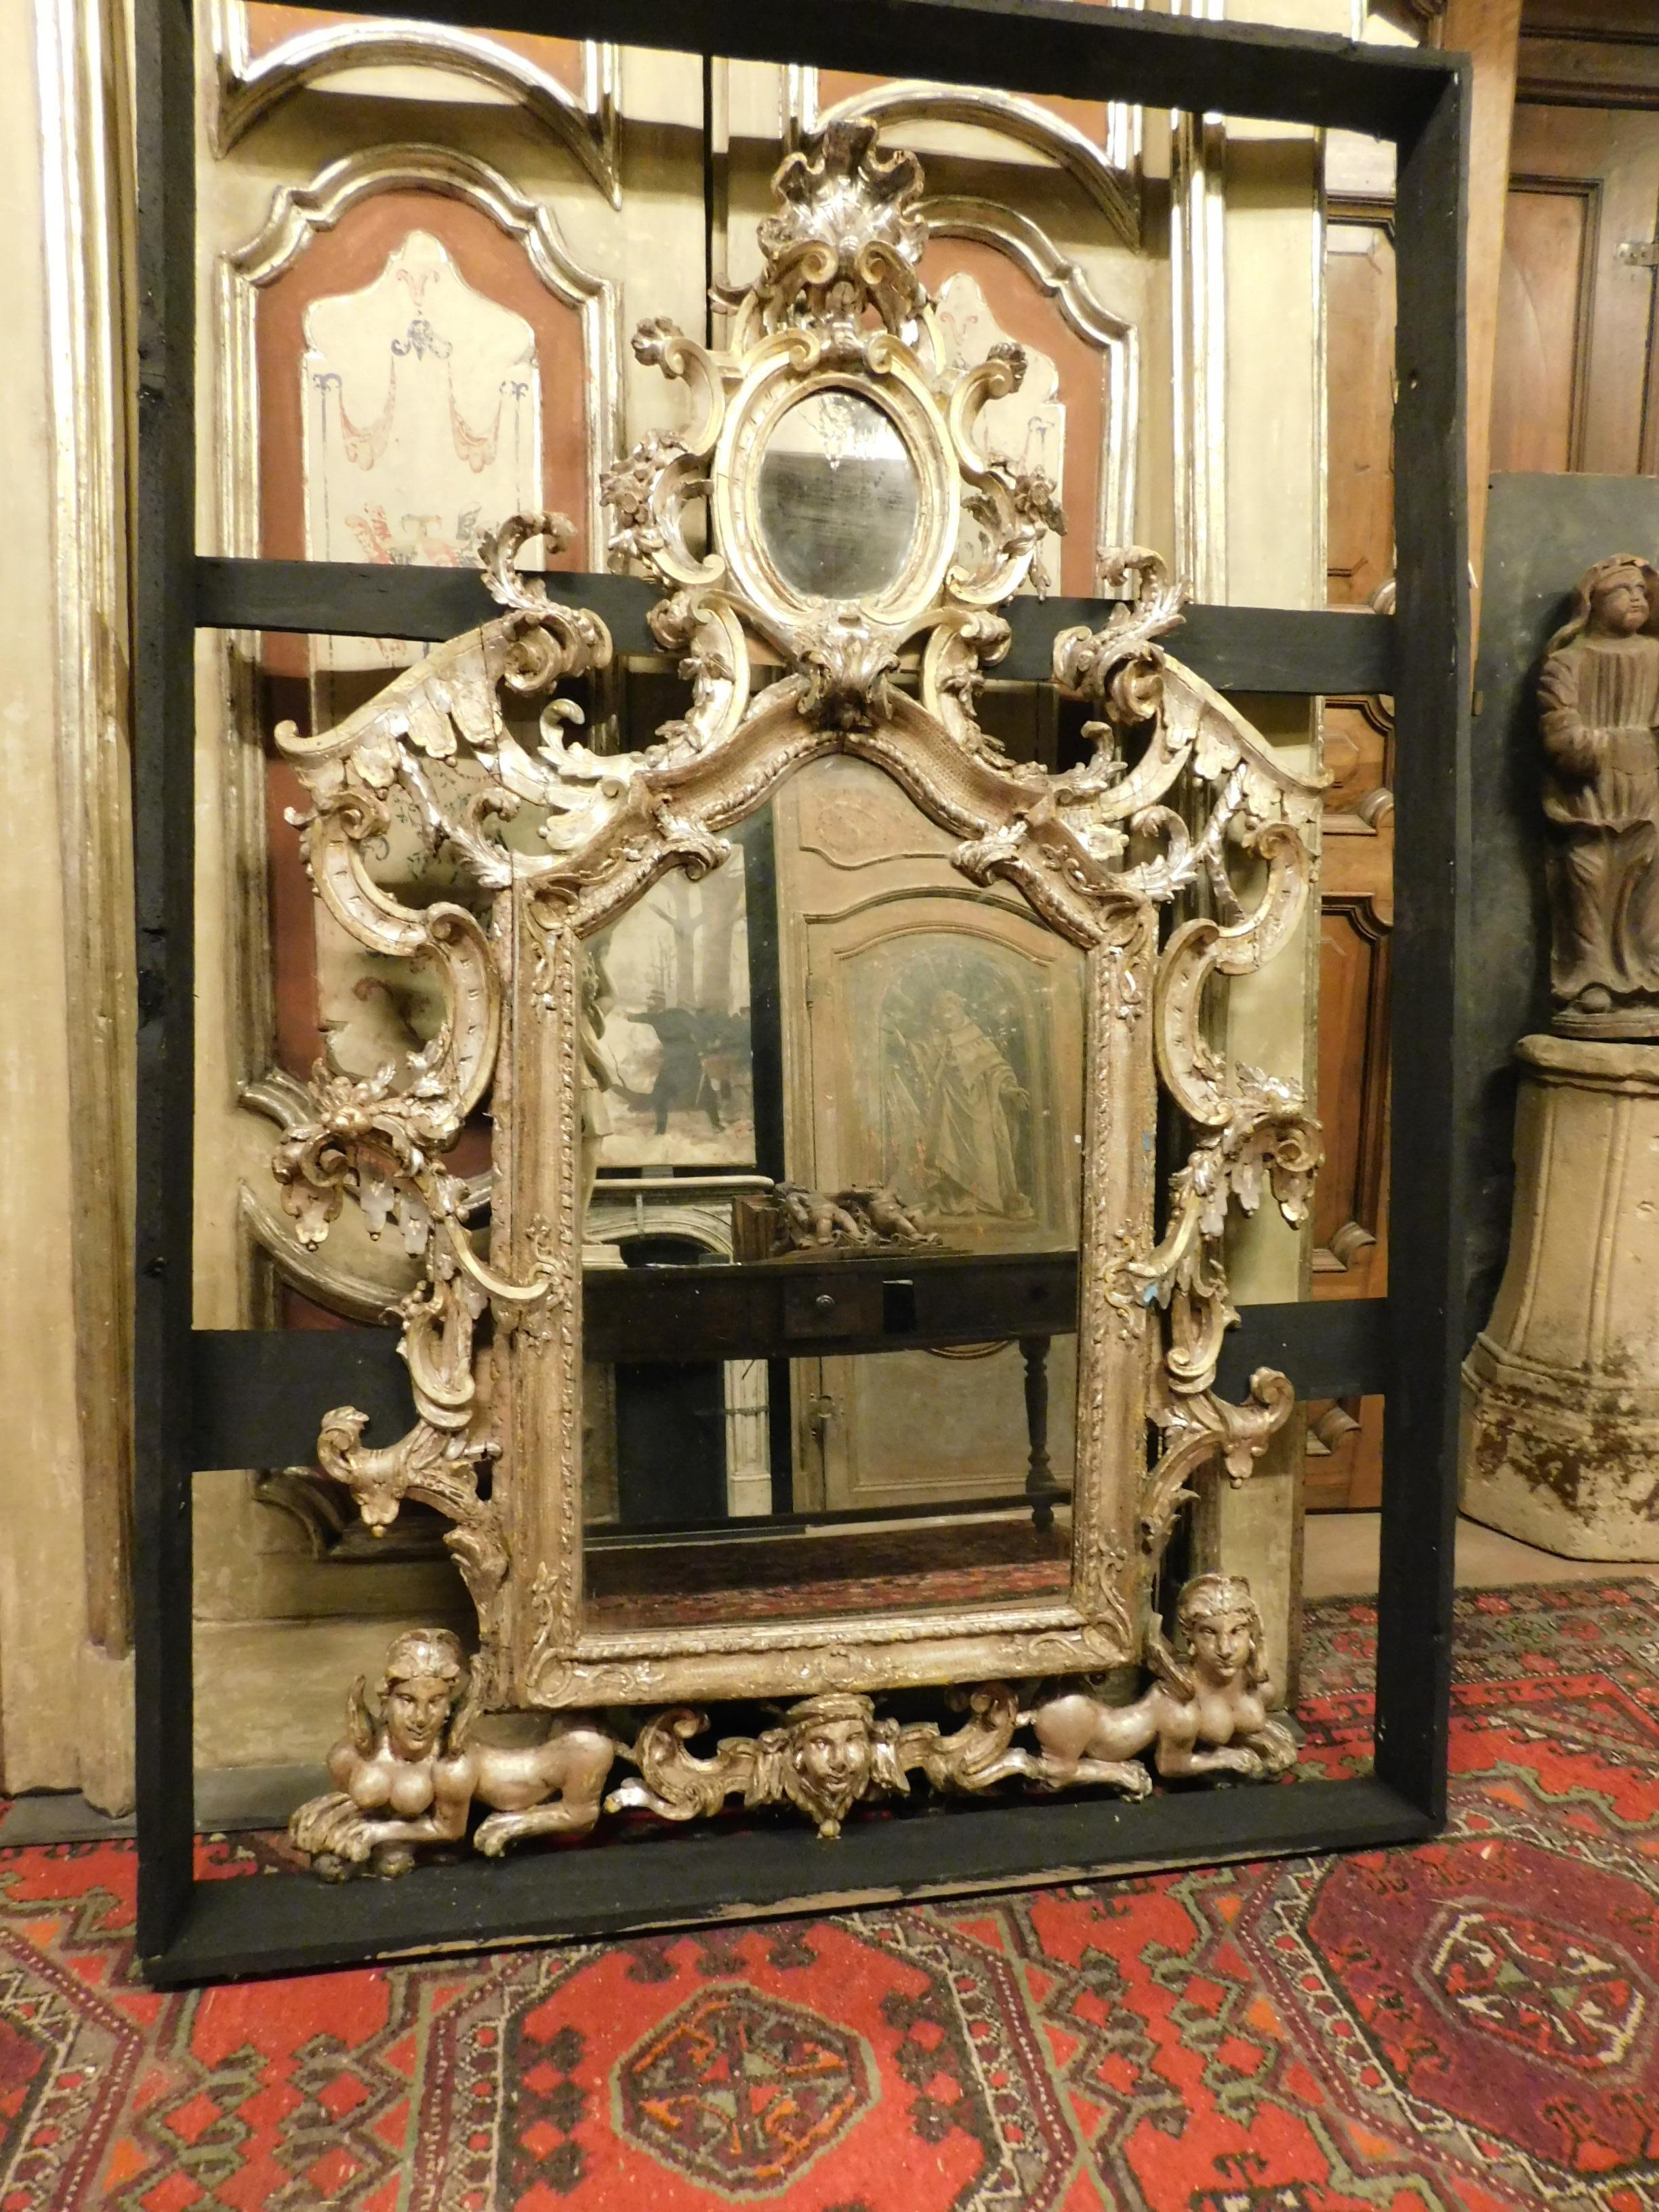 Ancien et grand miroir, richement sculpté à la main et à la feuille d'argent, avec double miroir et des représentations de créatures mythologiques sculptées dans le bois du cadre, construit pour le positionner au-dessus d'une importante cheminée